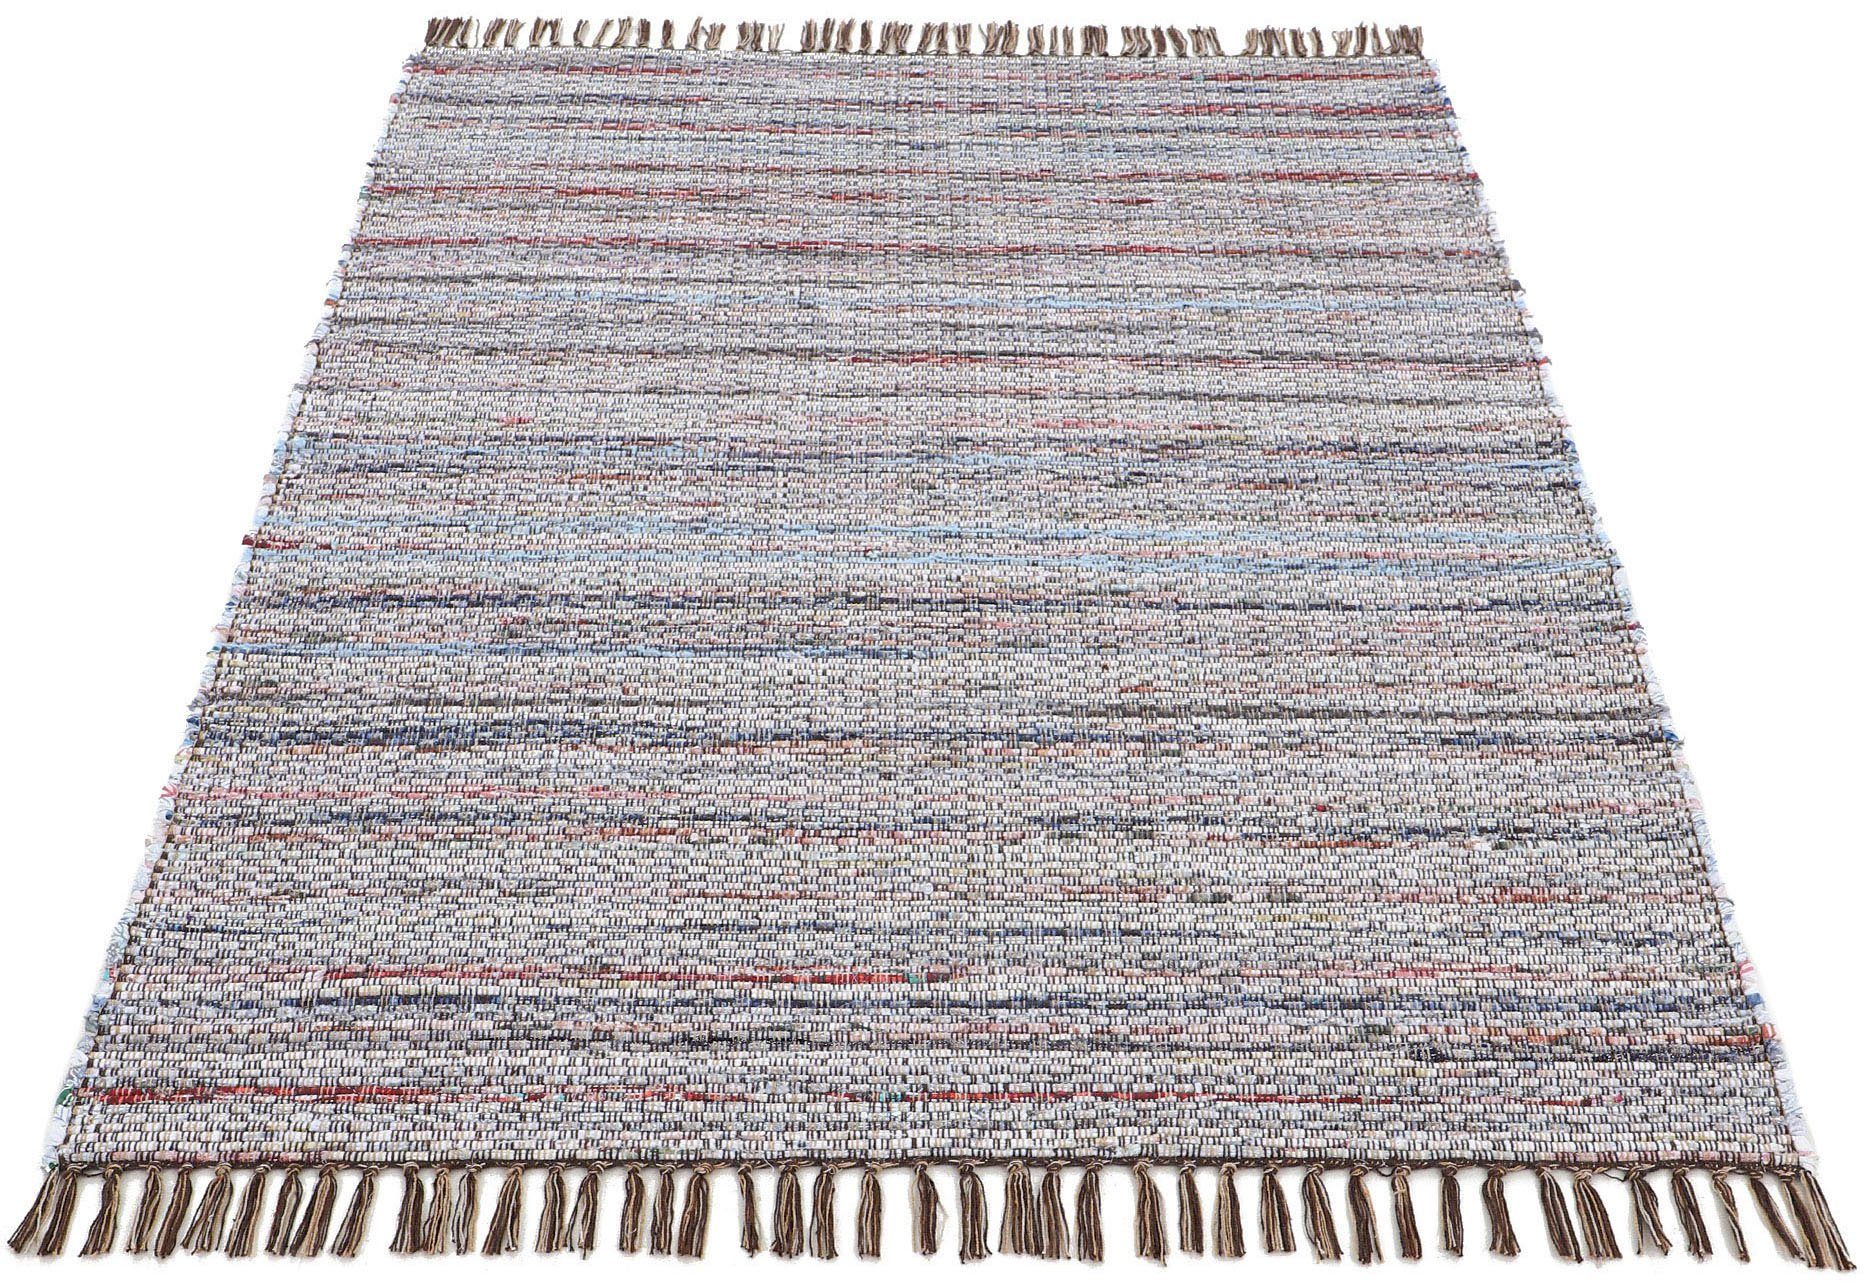 carpetfine vloerkleed kelim chindi handgeweven, patchwork tapijt met franjes, ook verkrijgbaar in loperformaten bruin